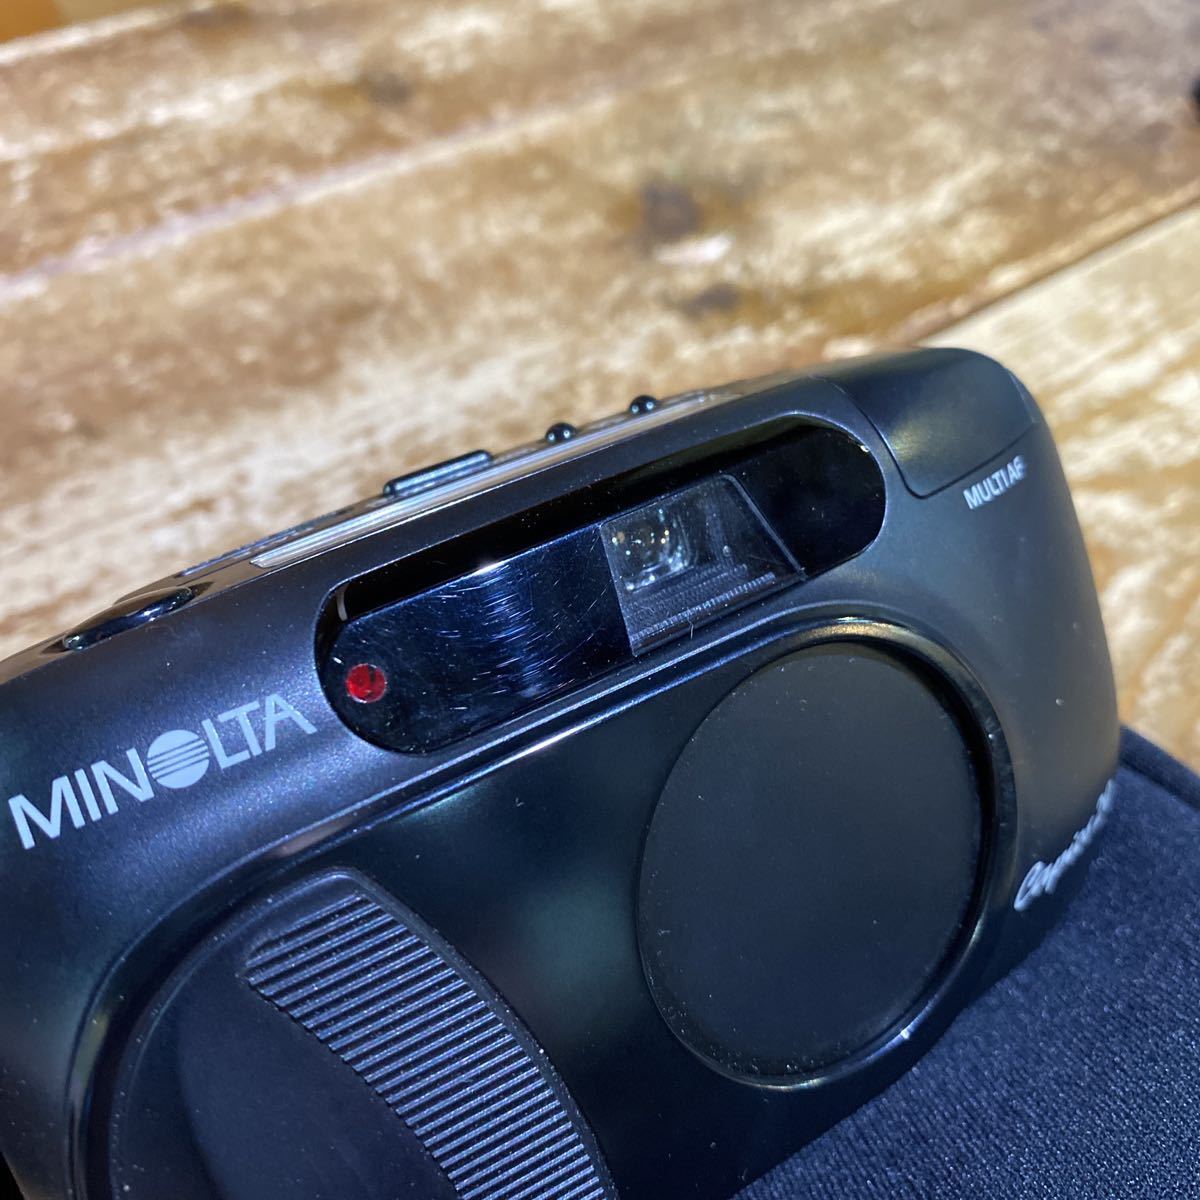 83 Minolta пленочный фотоаппарат цифровая камера 2023526